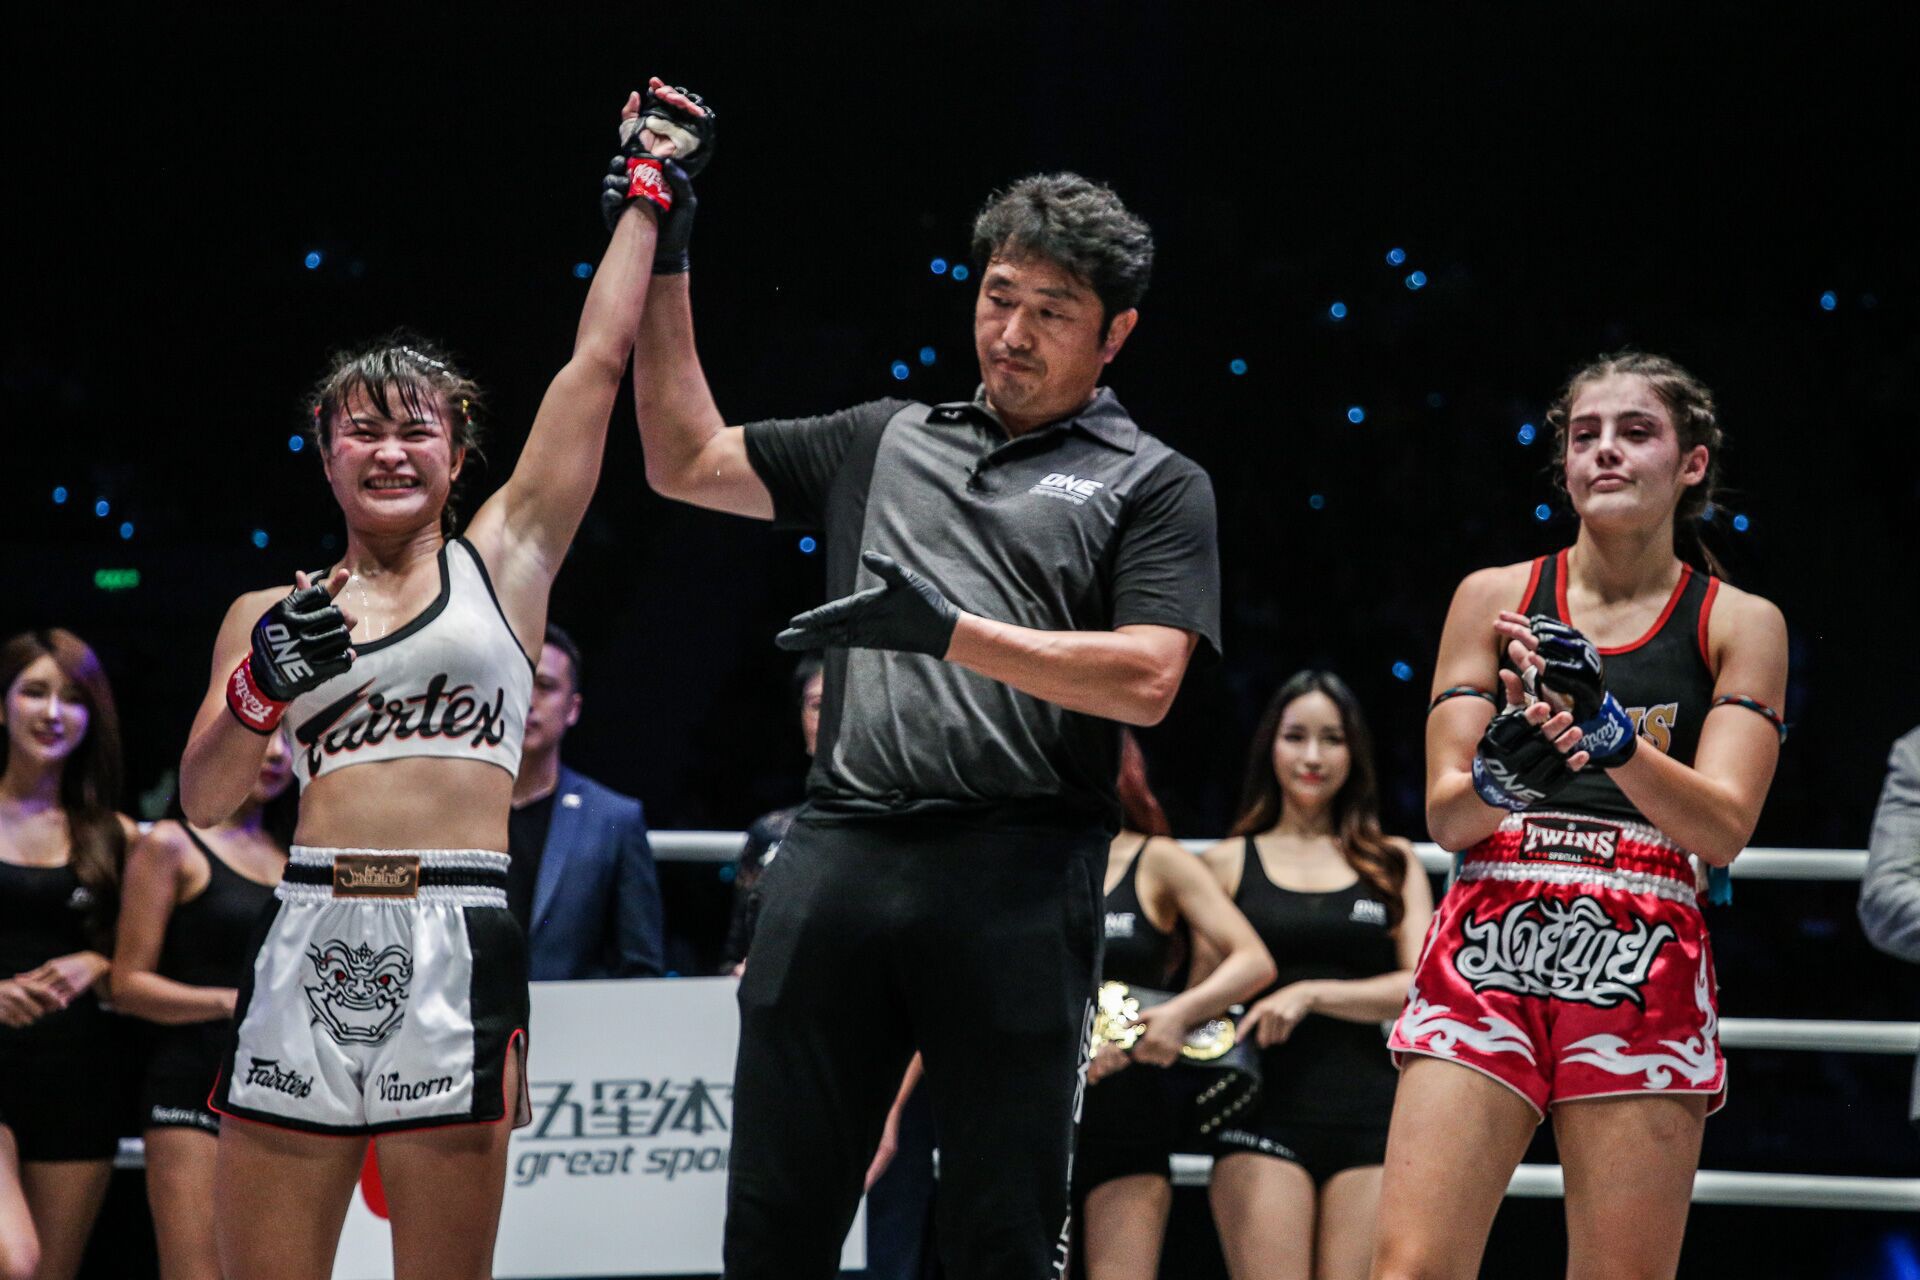 Mĩ nhân vạn người mê của làng võ bị đánh bầm dập đến mức khó nhận ra trong ngày ra mắt giải MMA lớn nhất châu Á - Ảnh 5.